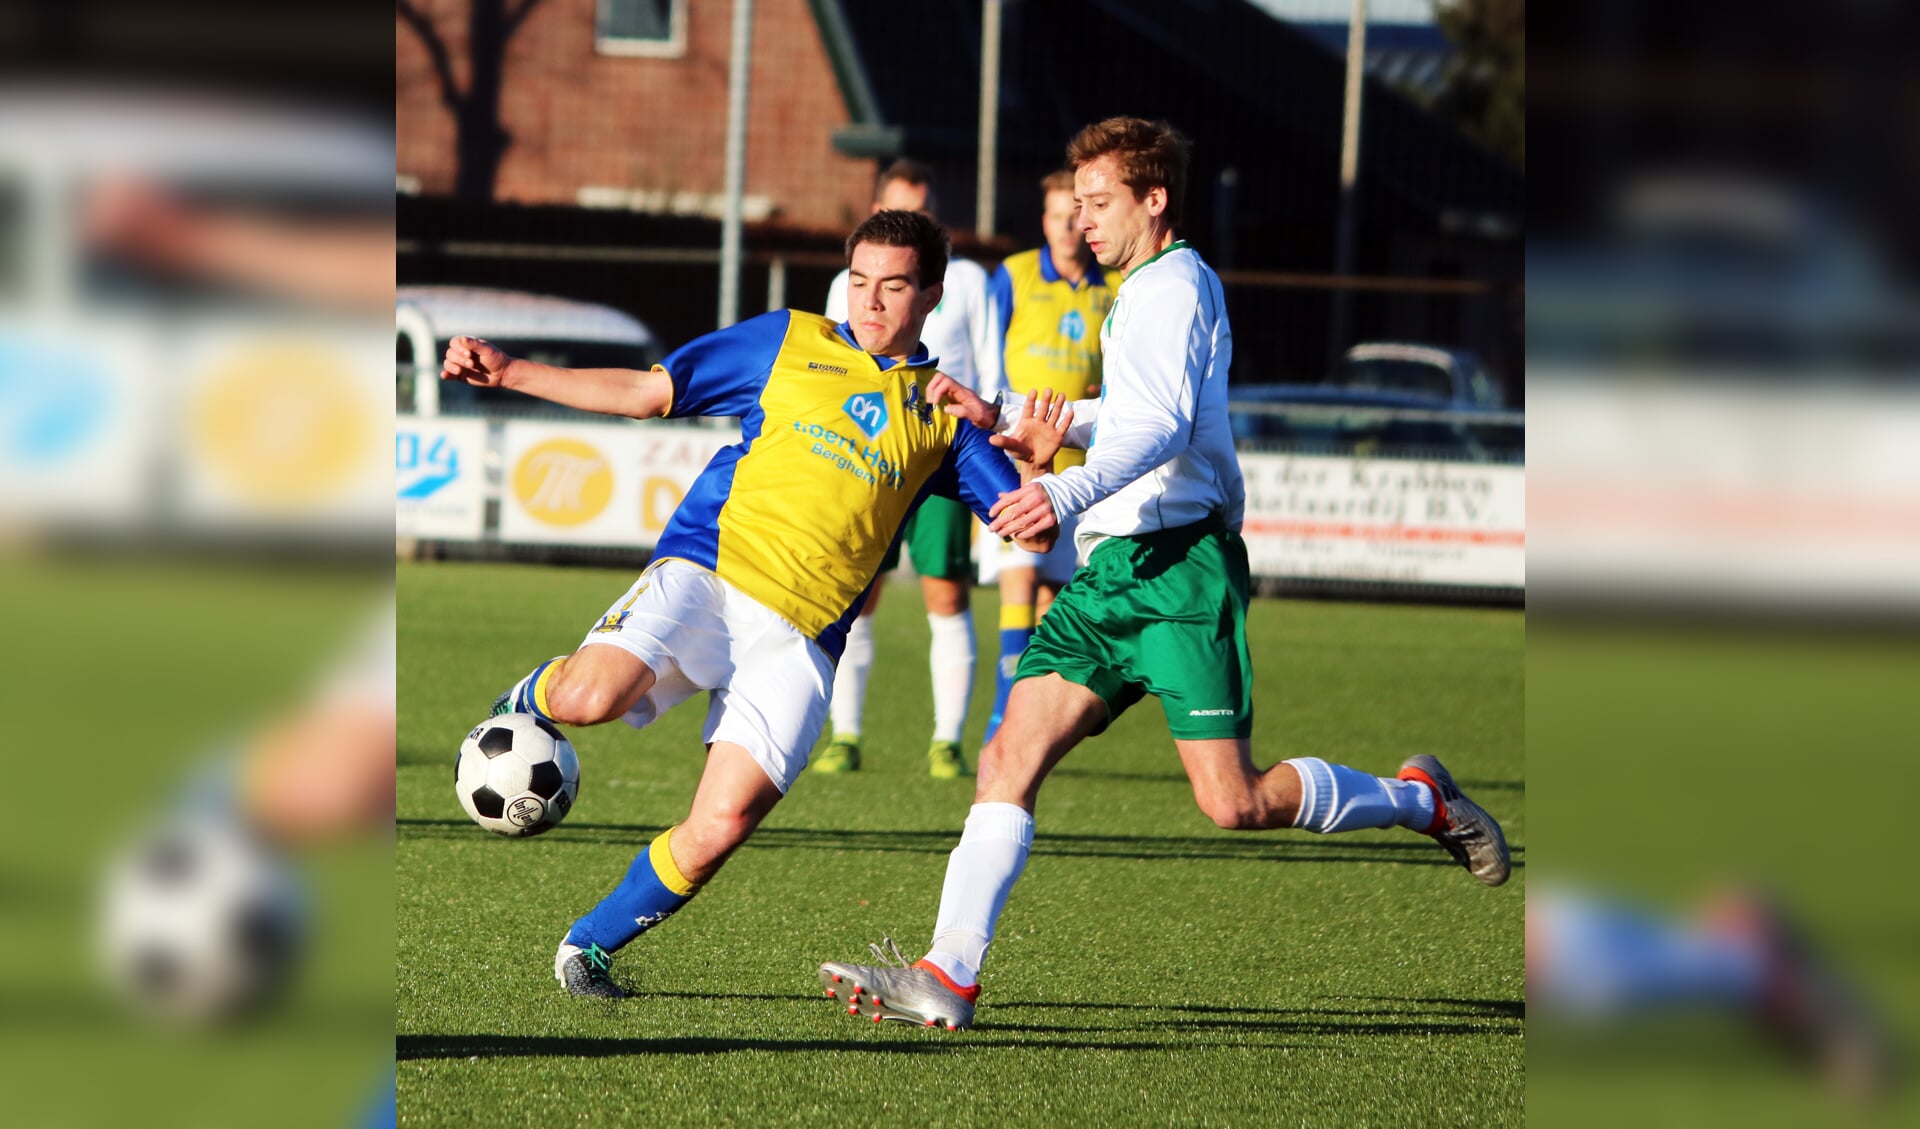 Nick Tiellemans in het shirt van Berghem Sport. (Foto: Jo van Herpen)